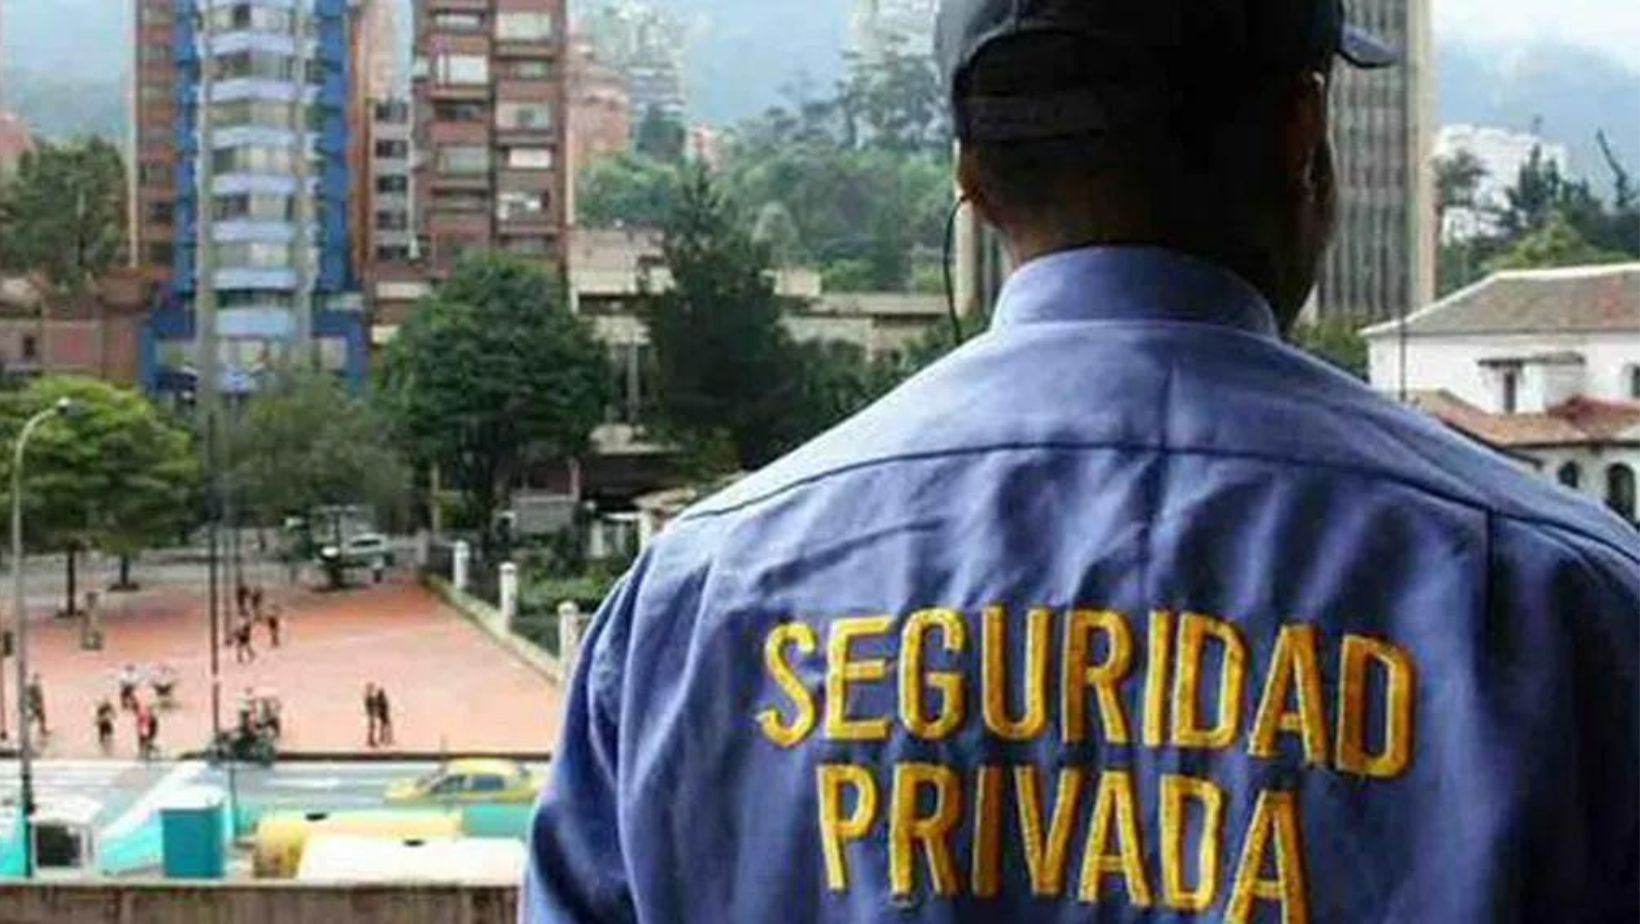 Vigilante murió dentro de compraventa en Antioquia: sufrió descarga eléctrica